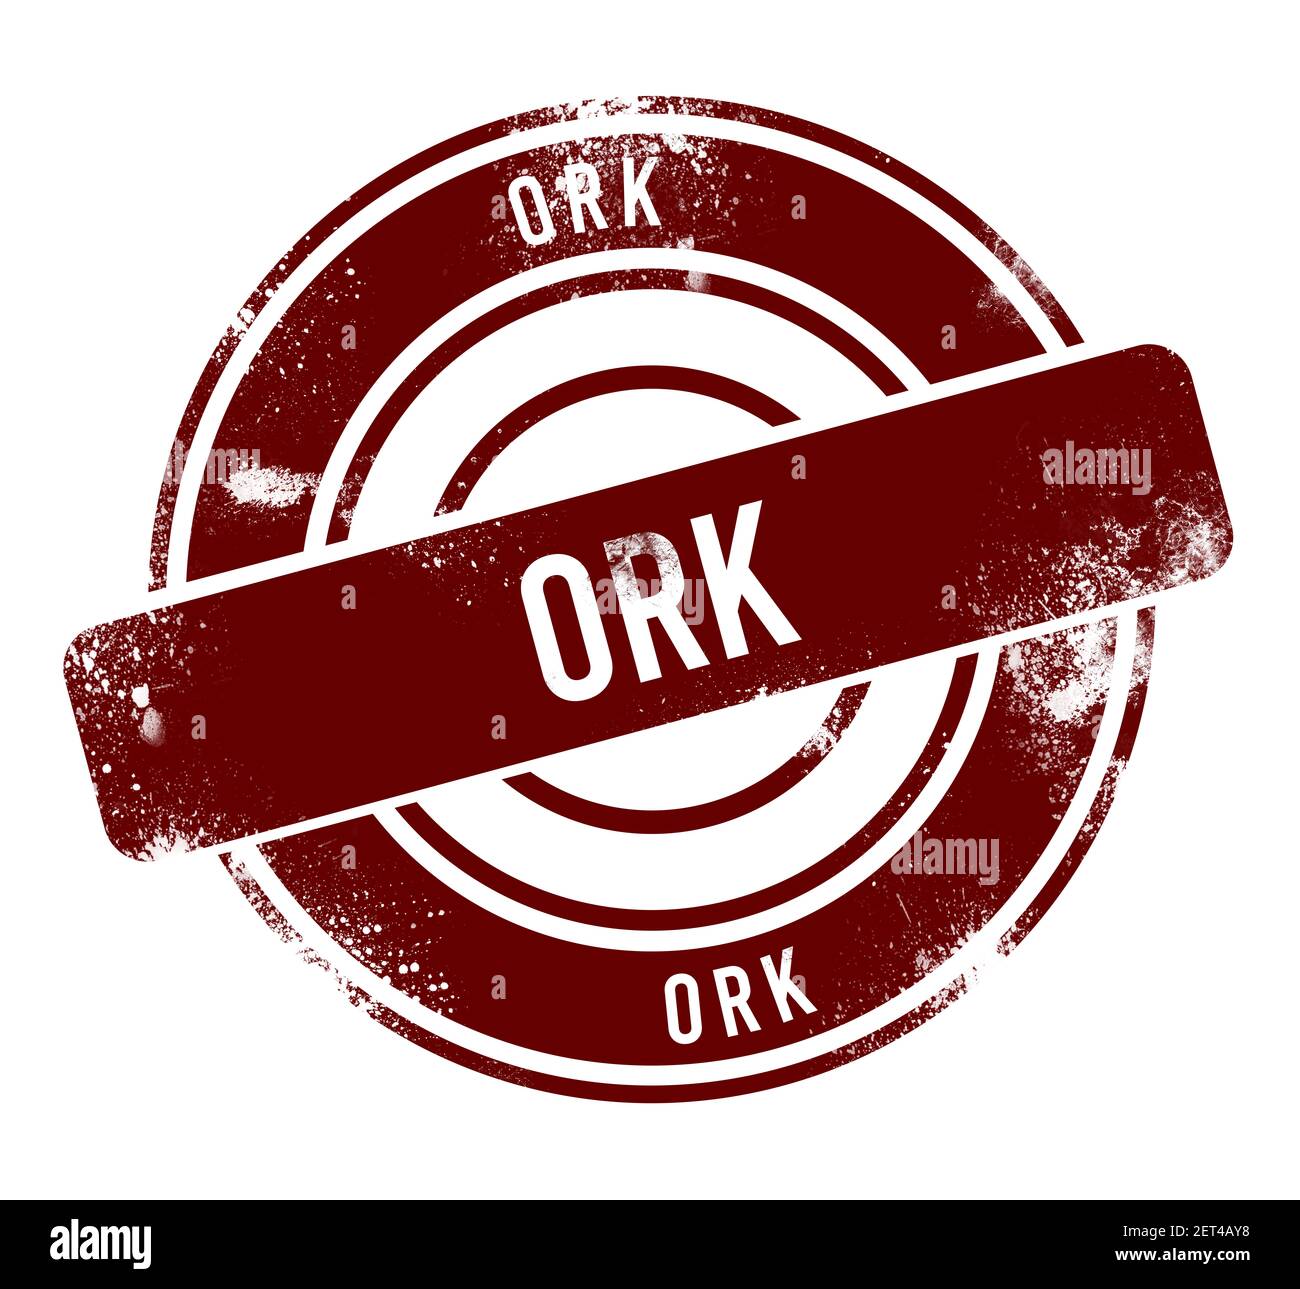 Ork - red round grunge button, stamp Stock Photo